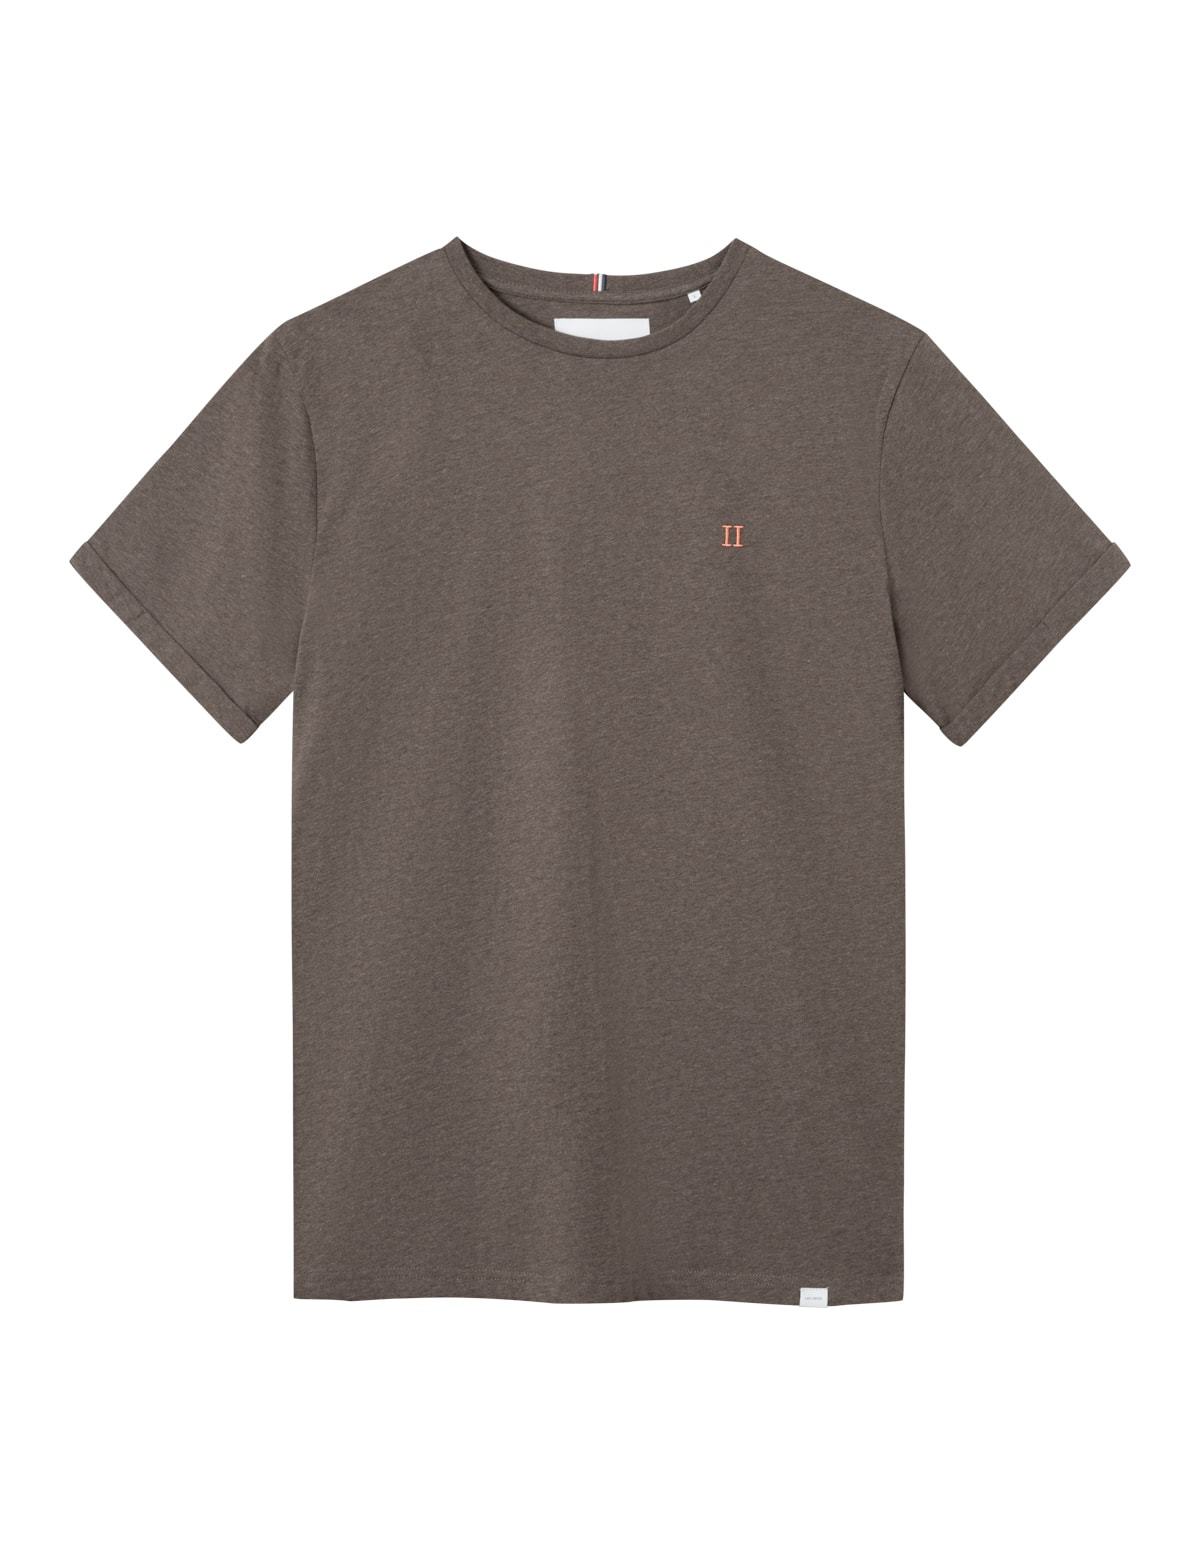  Nørregaard T-shirt, Mountain Grey/Melange Orange, M